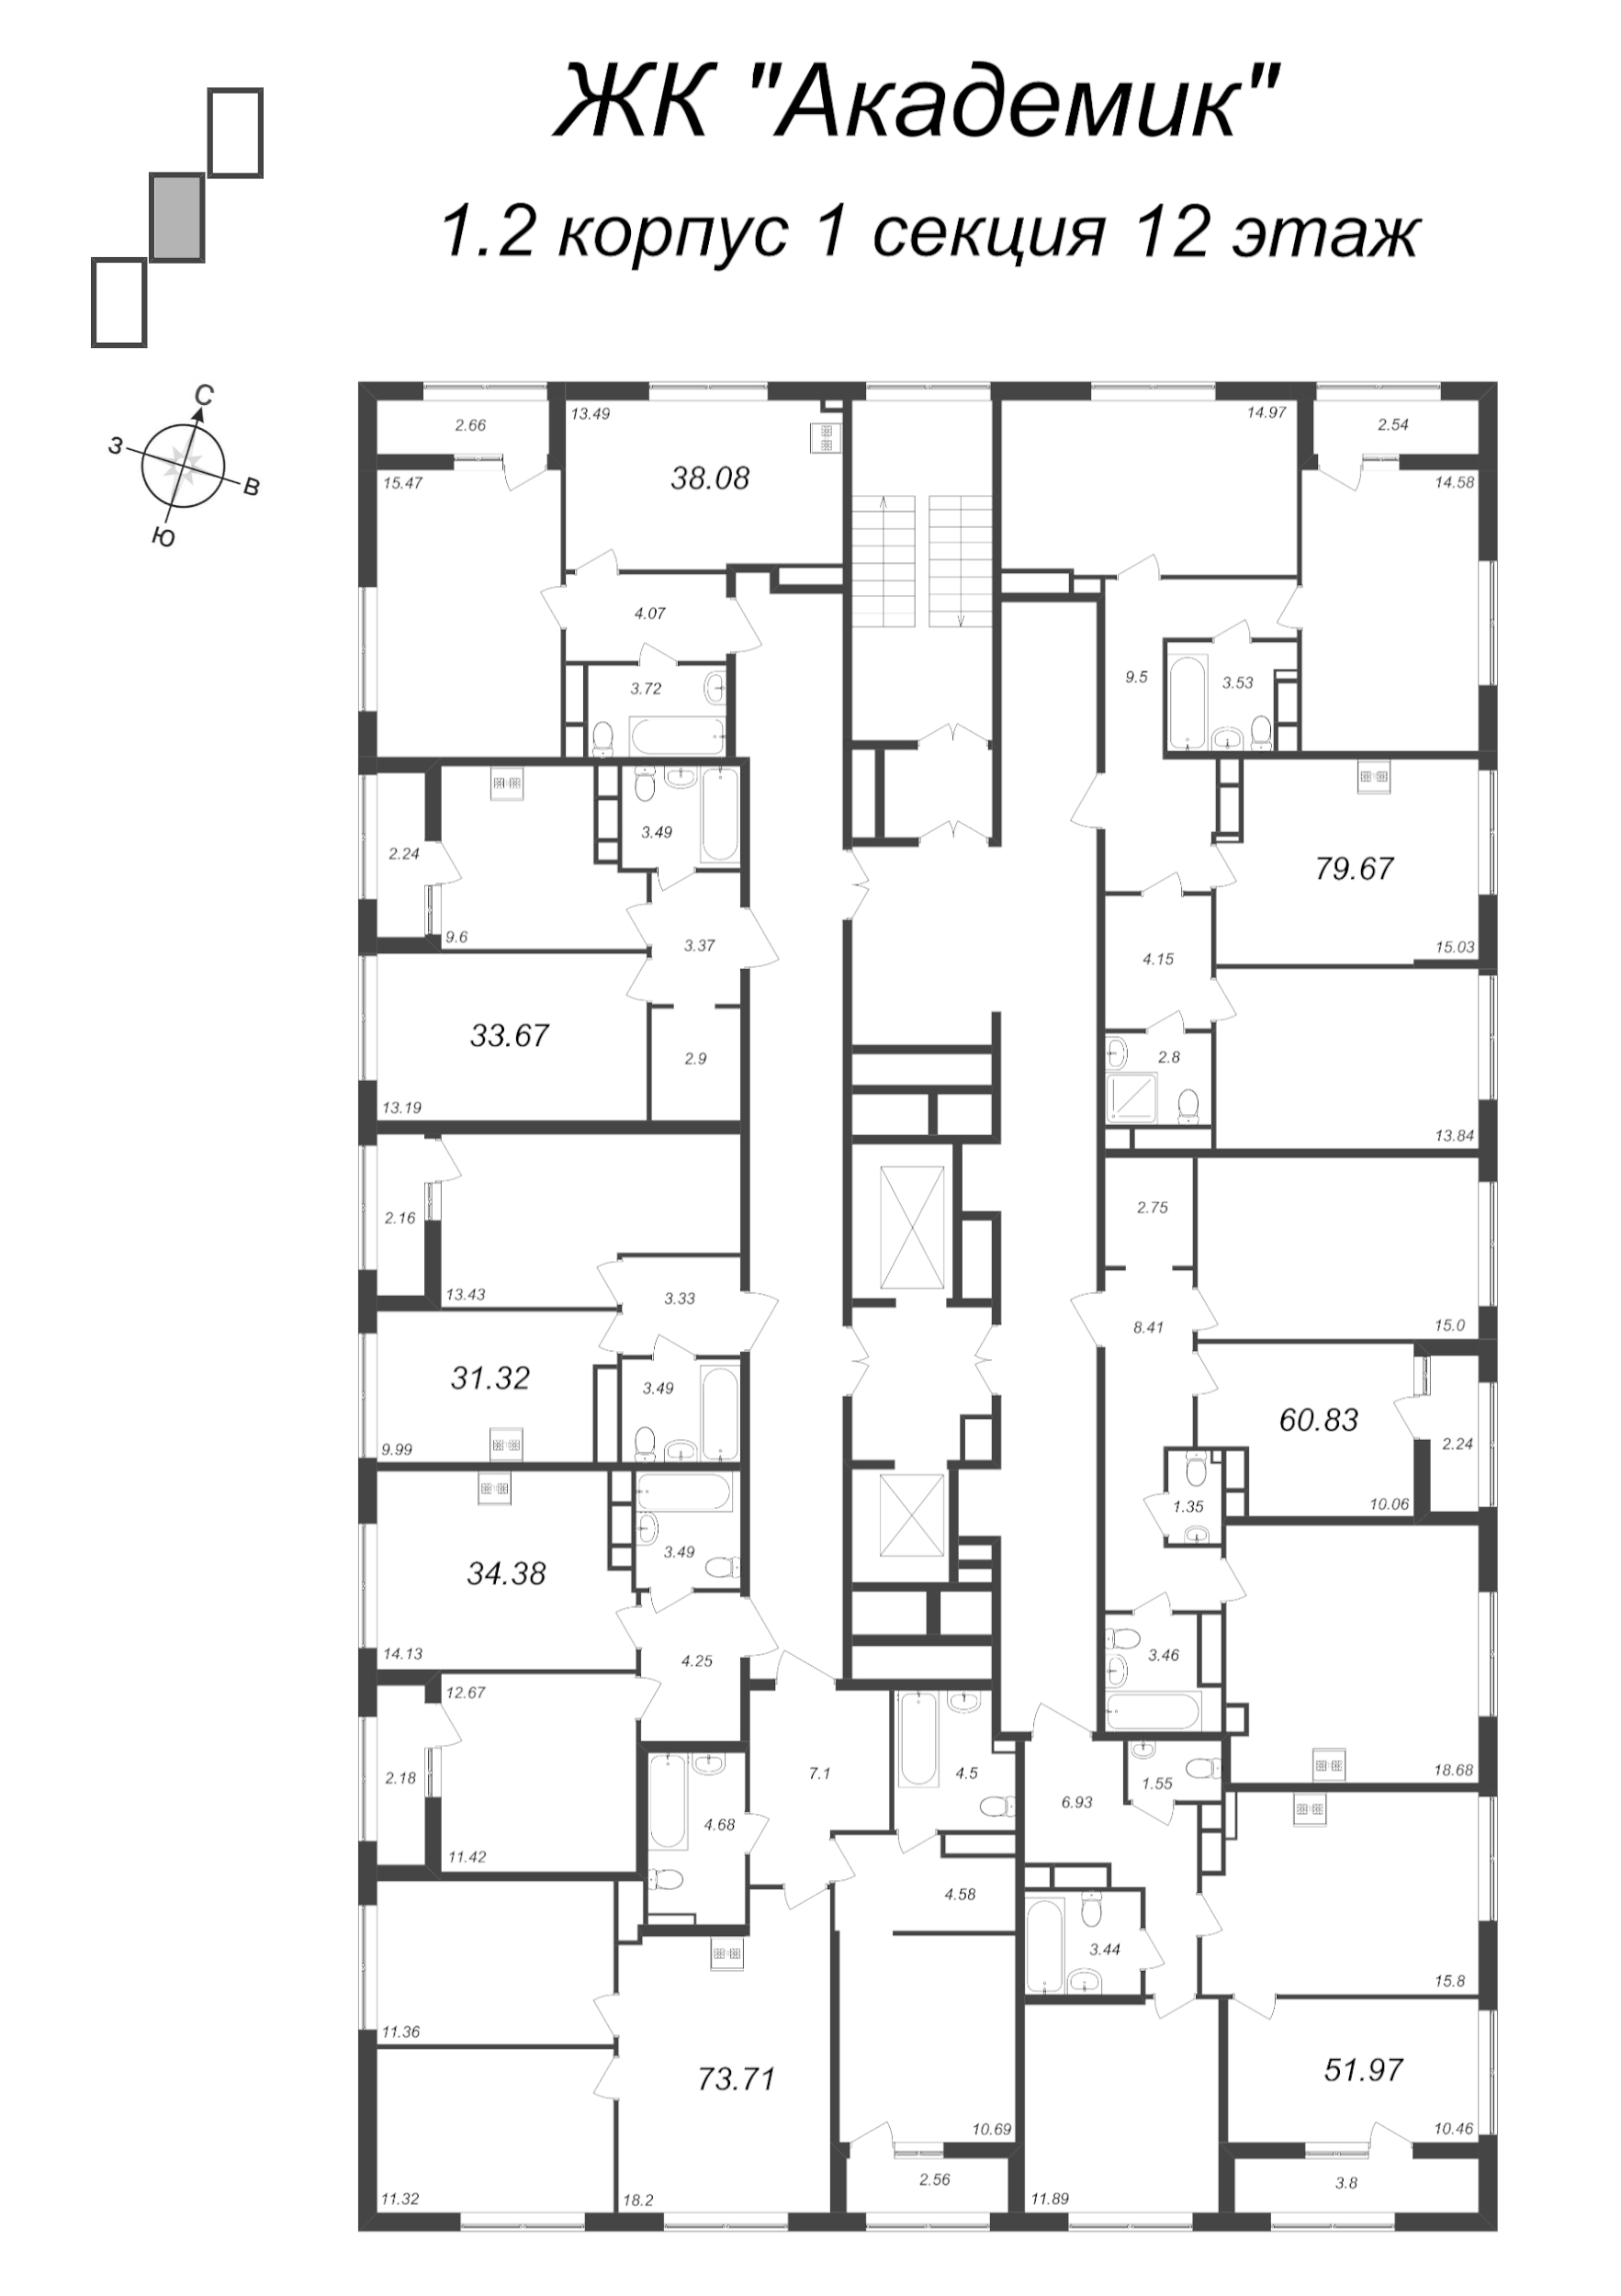 3-комнатная (Евро) квартира, 60.83 м² в ЖК "Академик" - планировка этажа